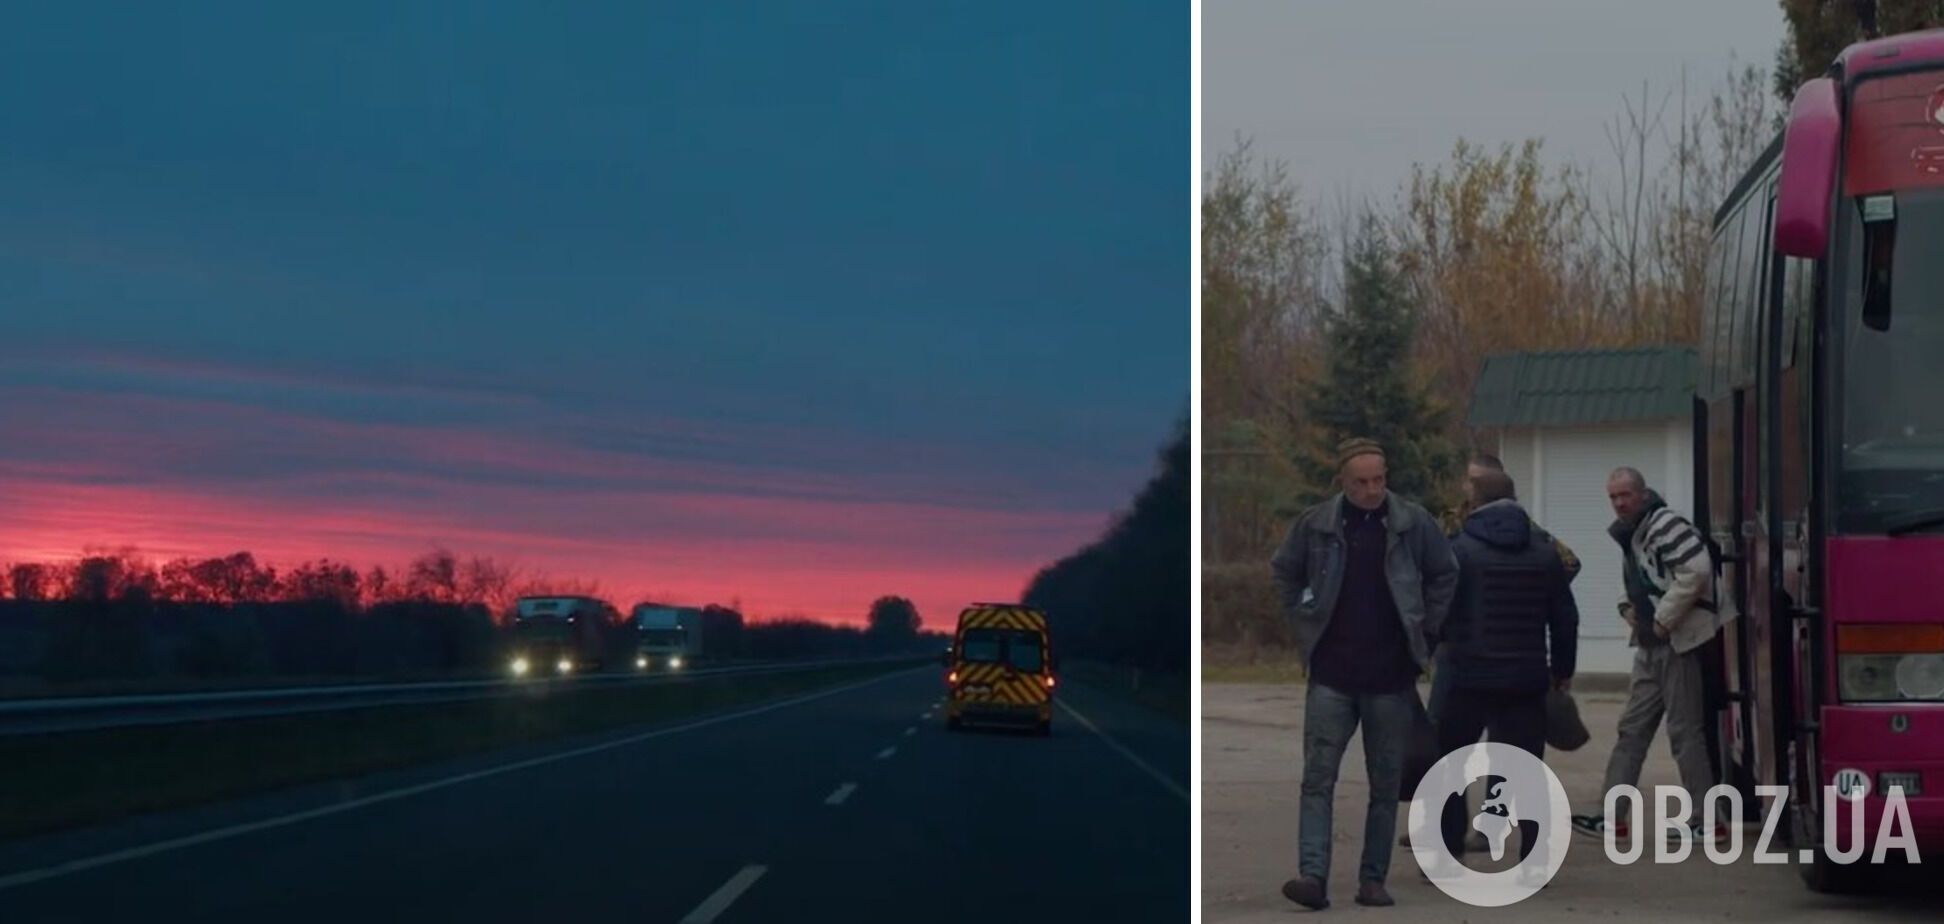 ''Солнце, я дома'': в сети показали трогательные кадры возвращения из плена украинских пограничников. Видео